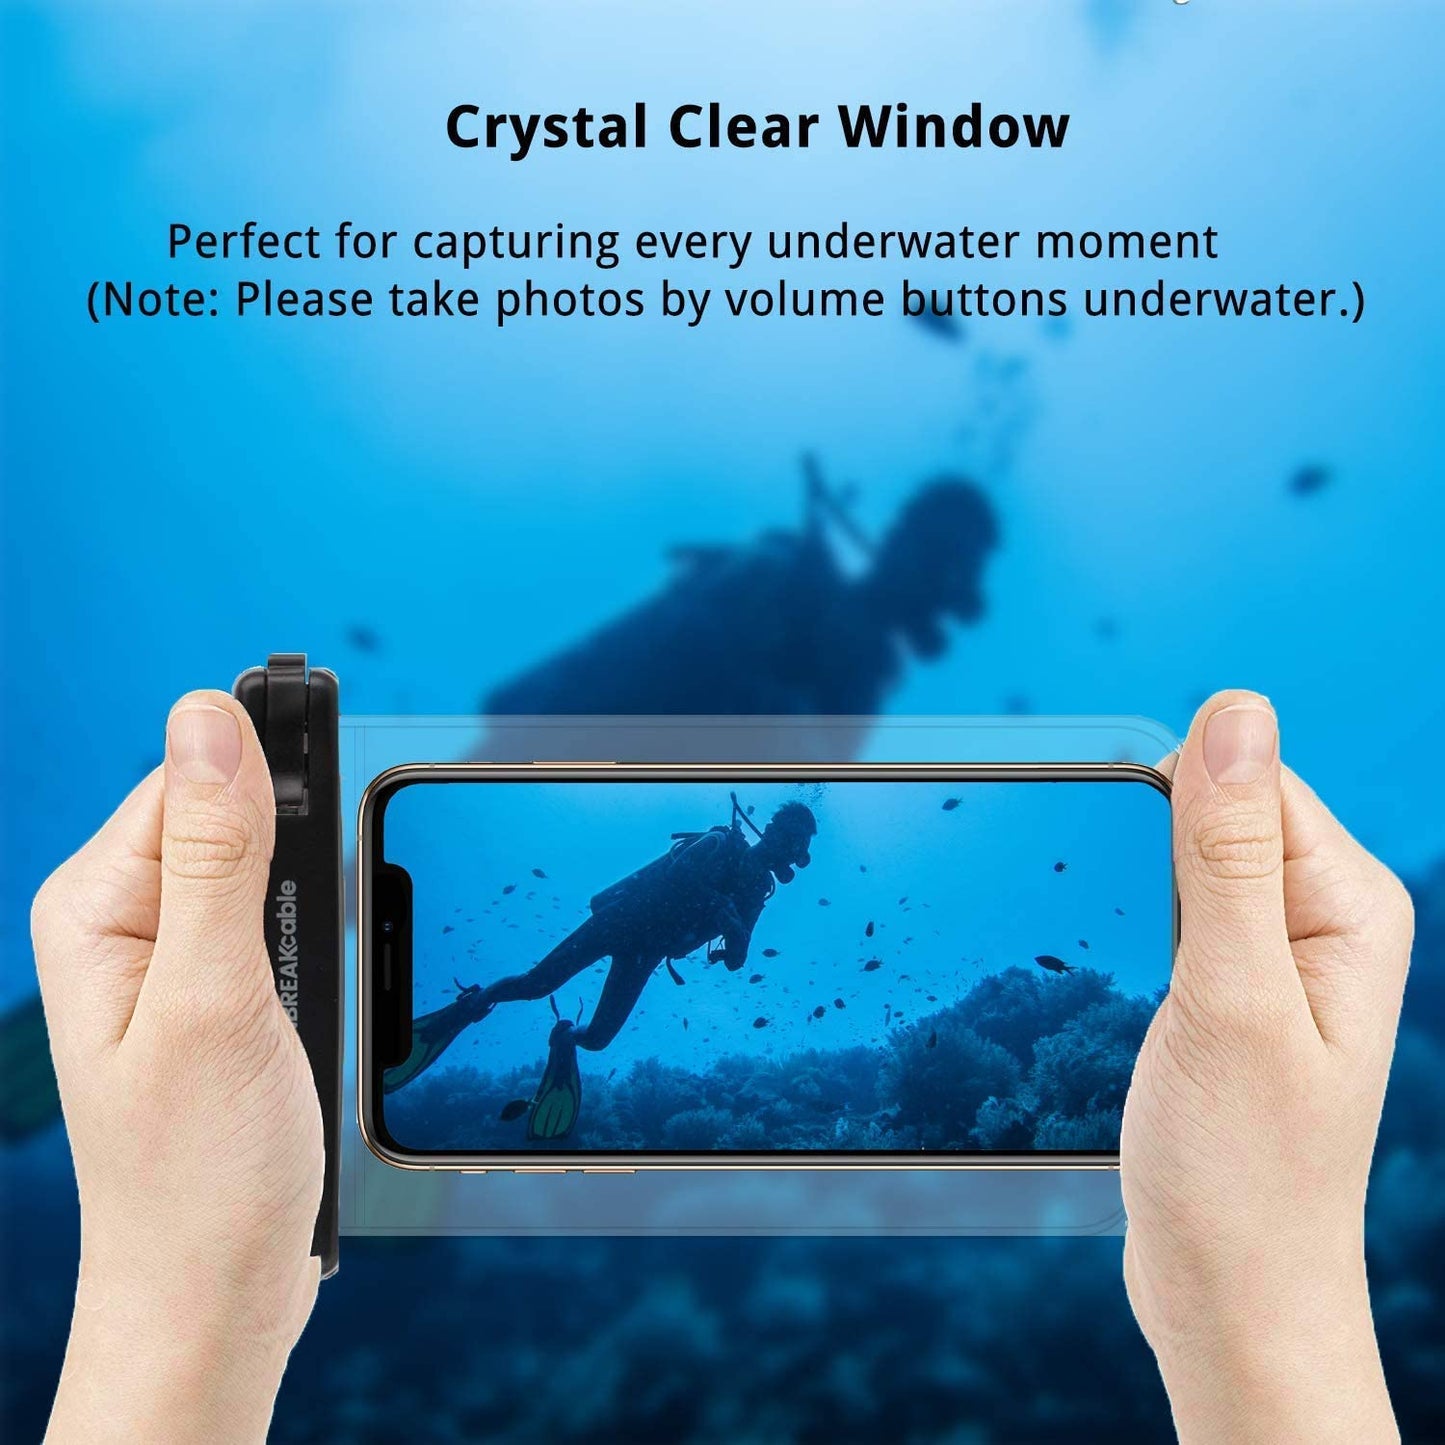 UNBREAKcable Waterproof Phone Case 2-Pack IPX8 Universal Waterproof Phone